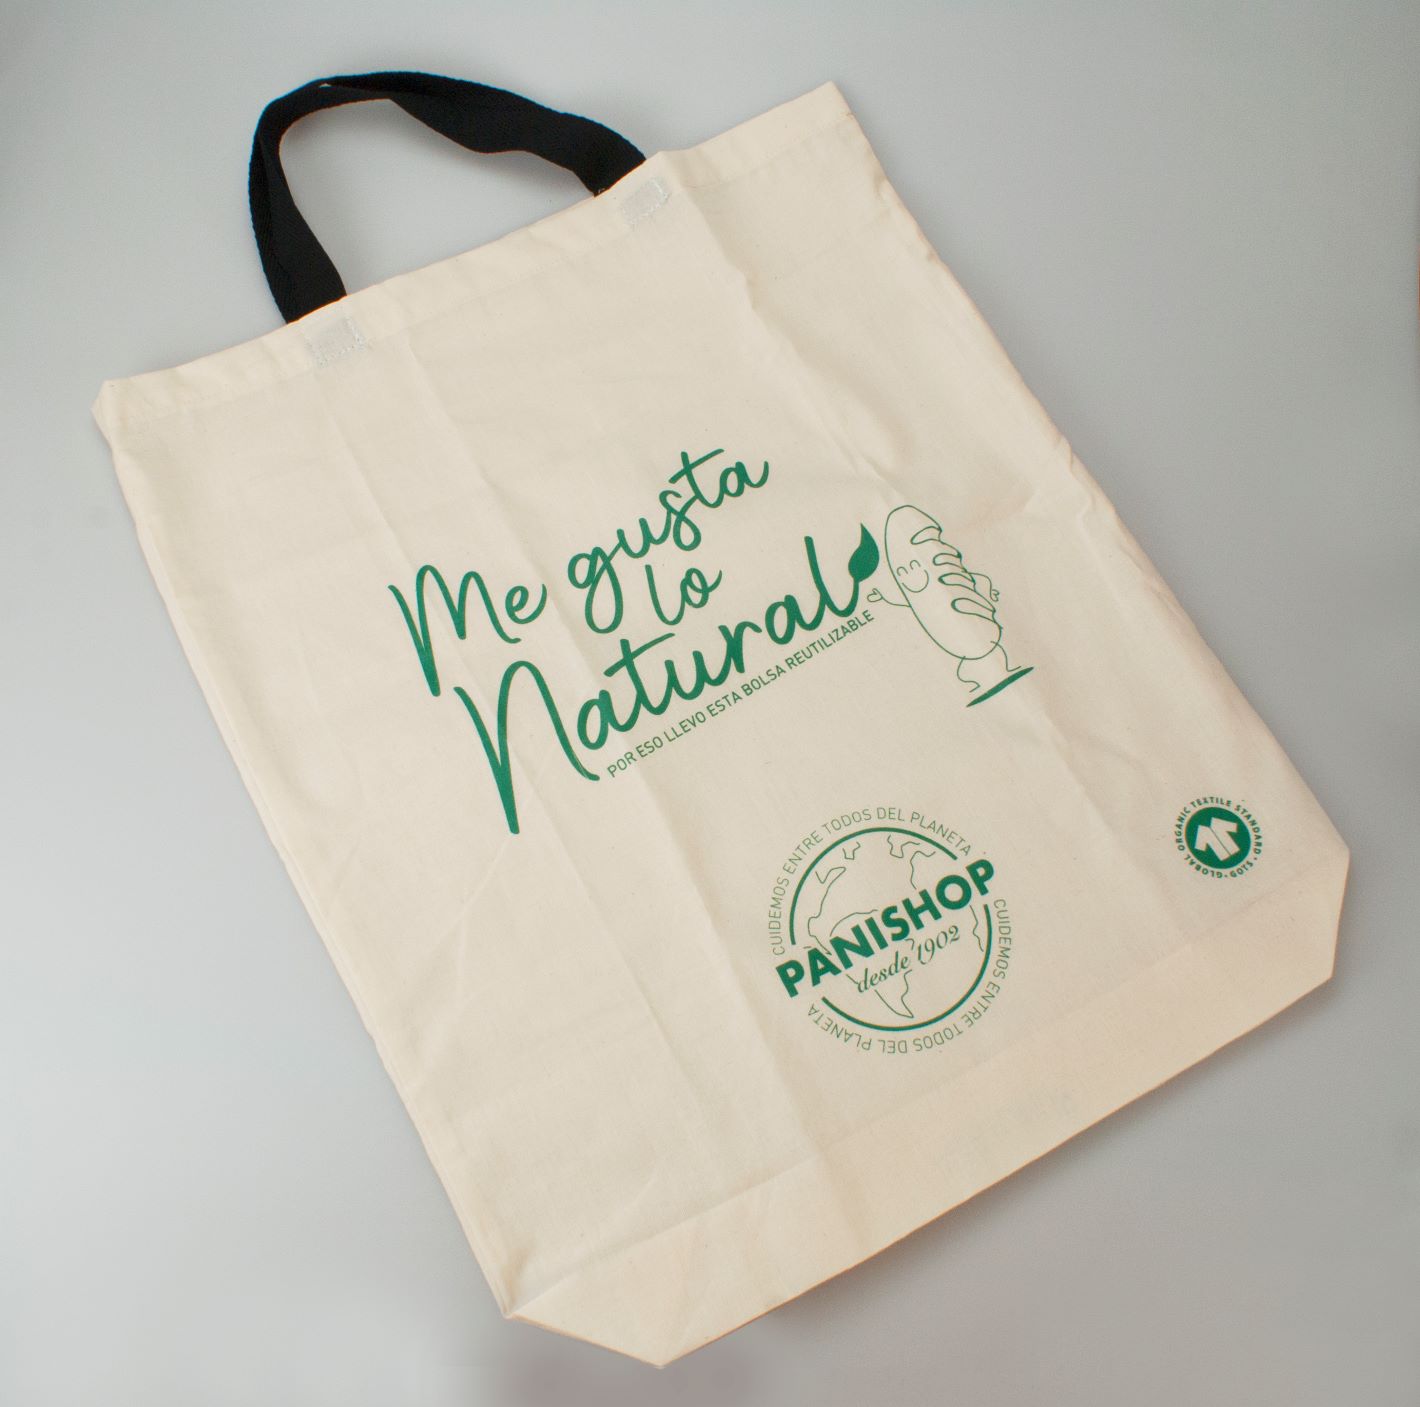 Panishop presenta su nueva bolsa reutilizable de tela para el pan y que se en todas sus tiendas - iGastro Aragón: Noticias de gastronomía en Aragón